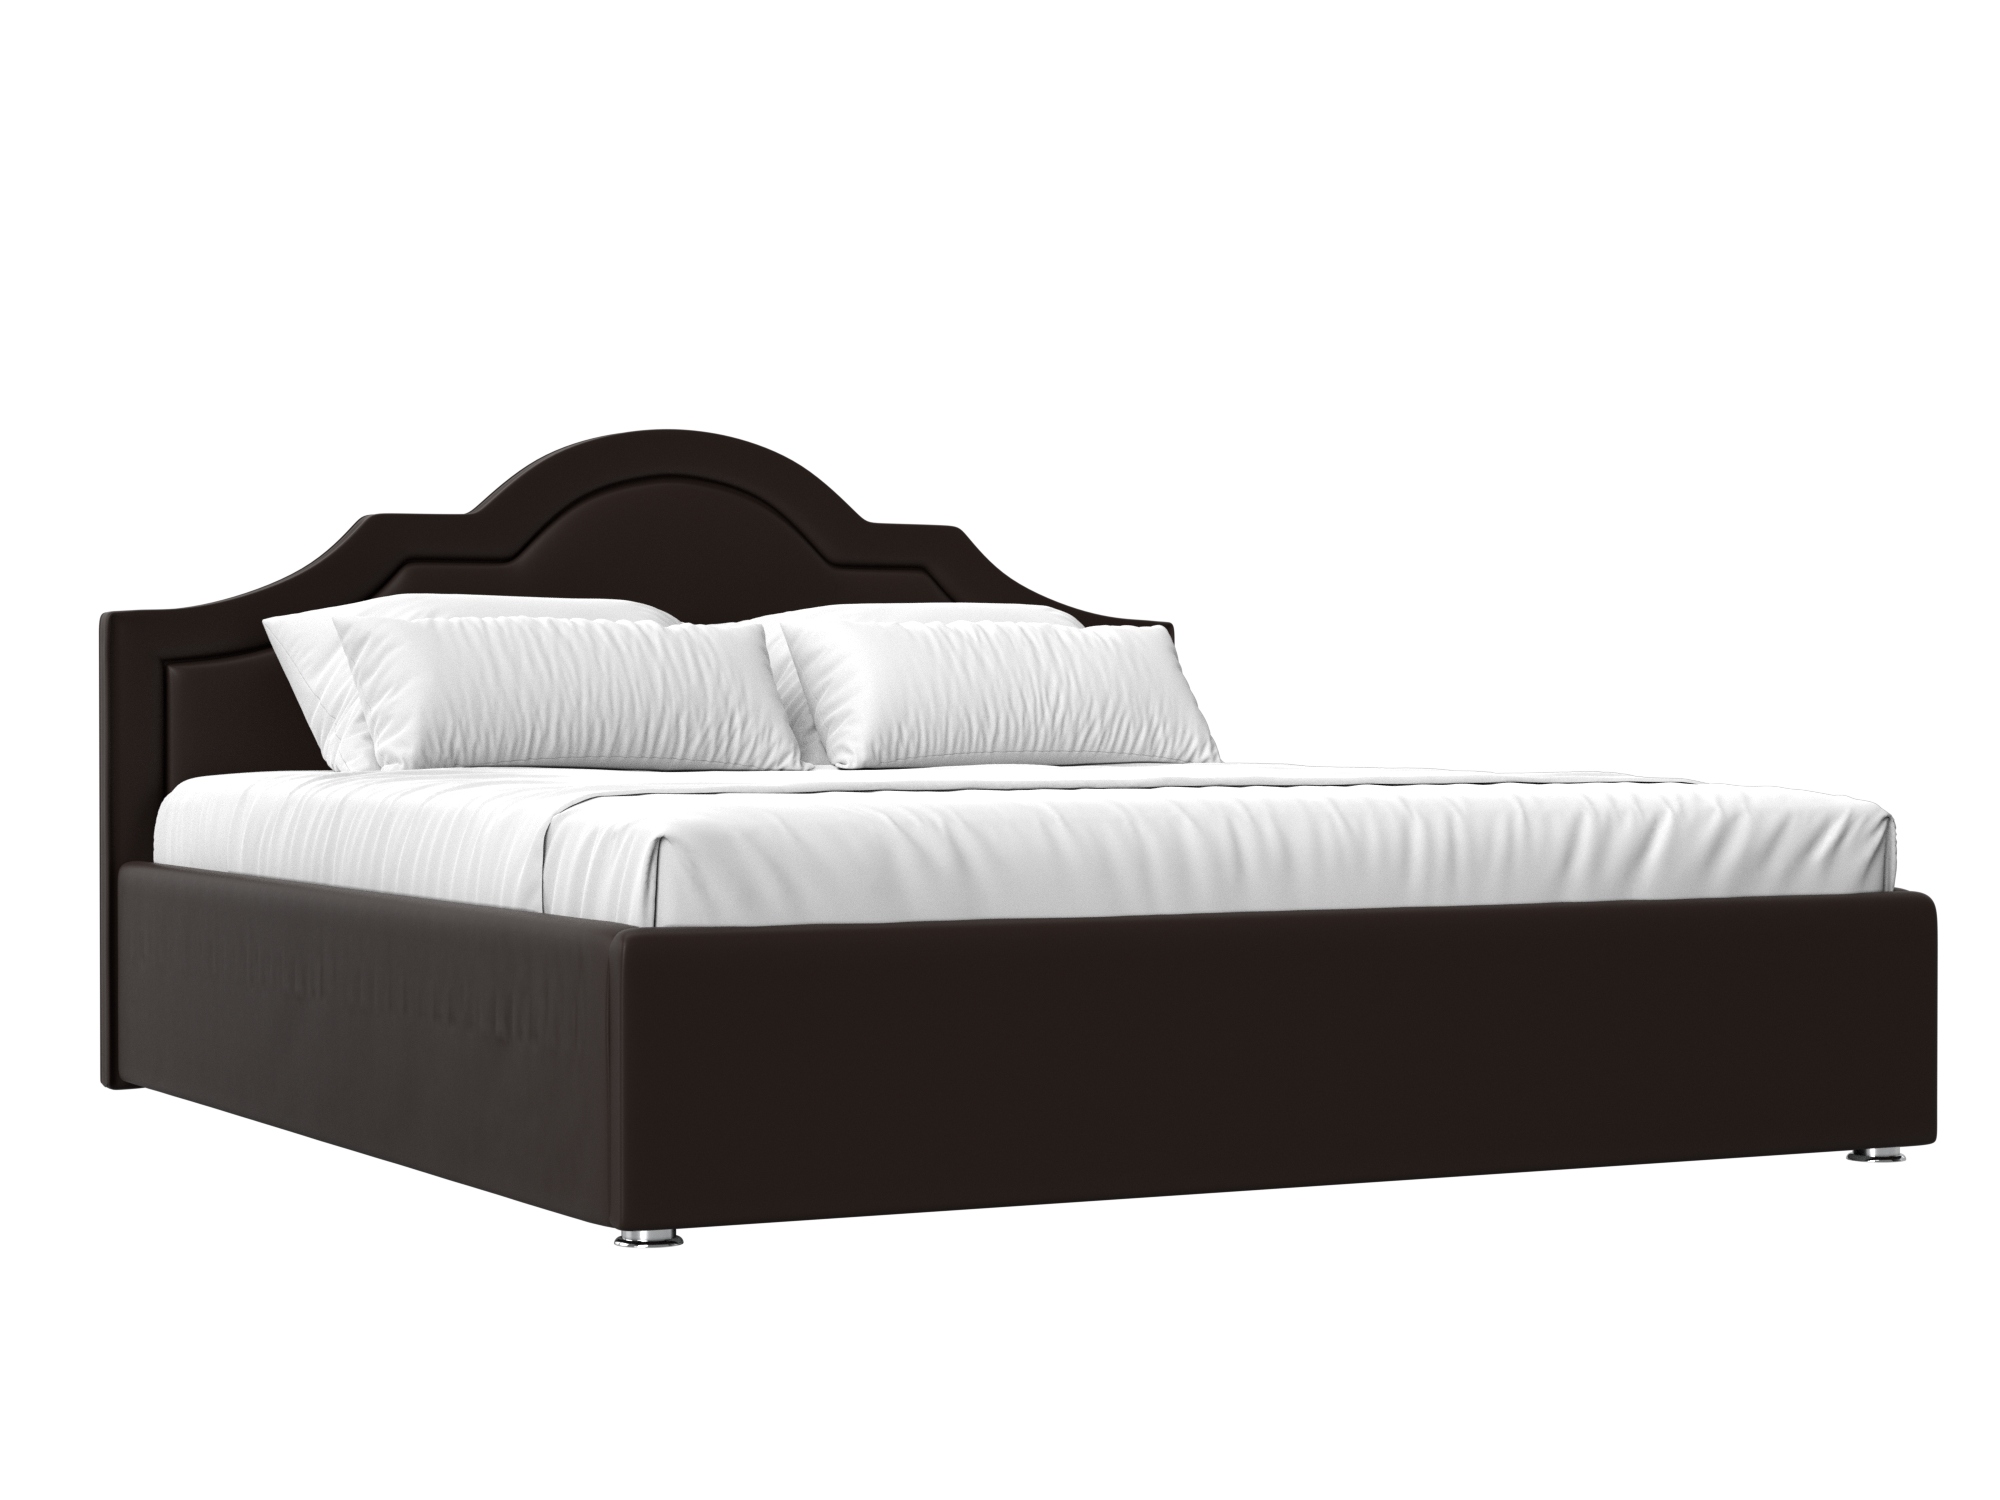 Кровать Афина (160х200) Коричневый, ЛДСП афина кровать 160х200 белый глянец коричневый темный белый мдф лдсп